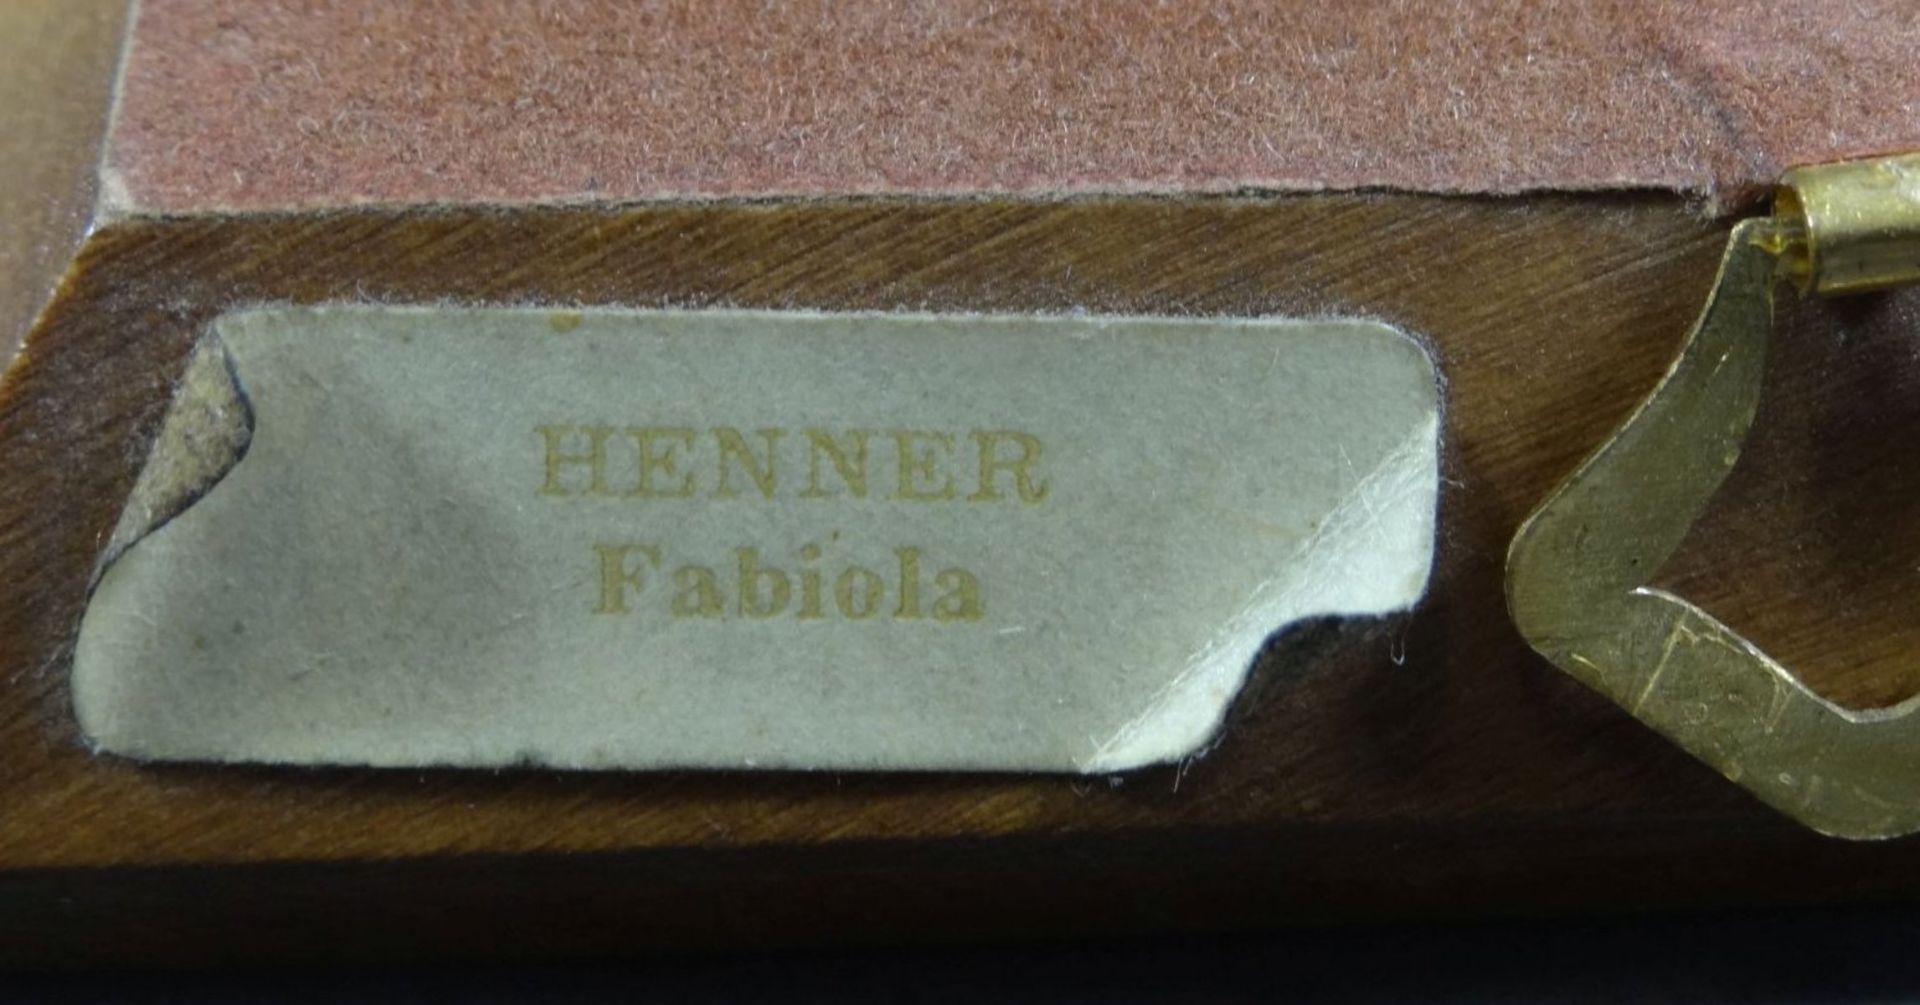 Miniatur Portrait der Henner Fabiola, 11,5x9,5 cm - Bild 6 aus 6